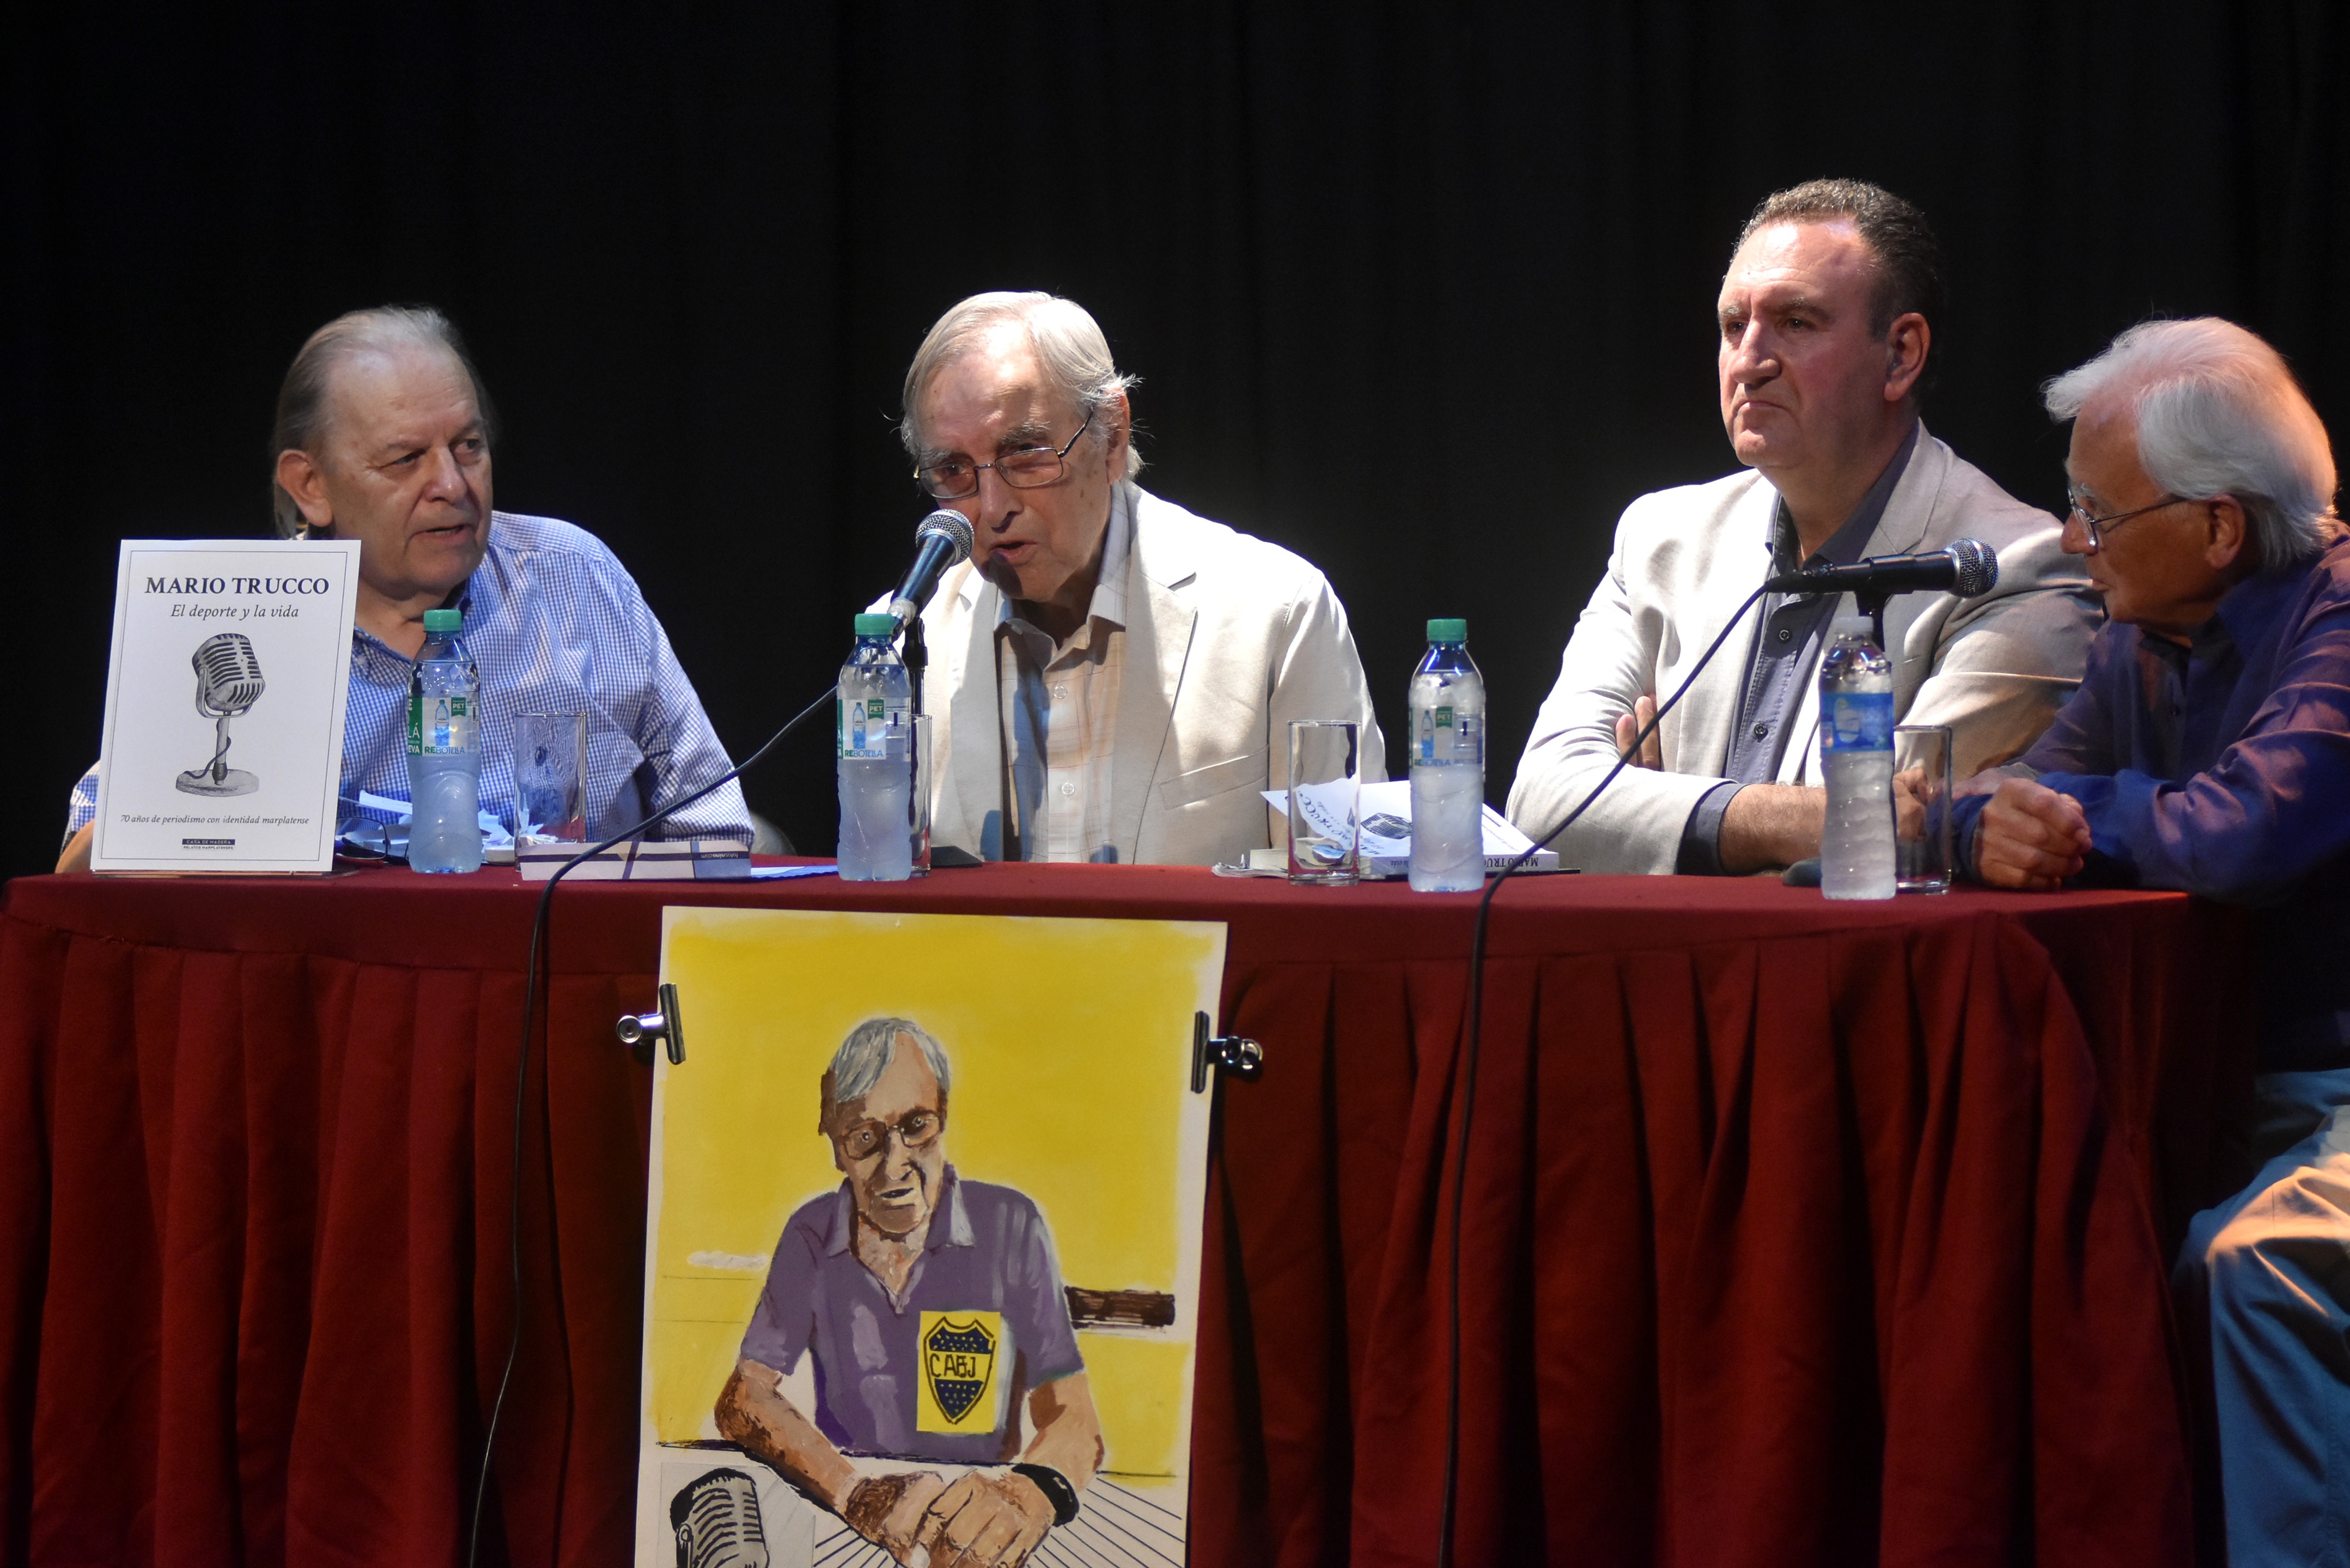 Mario Trucco presentó el libro sobre sus 70 años en el periodismo junto a José Andrés Soto, Vito Amalfitano y "Pocho" Palumbo. Jugosas y emotivas anécdotas y repaso de los mojones de su impresionante trayectoria. 